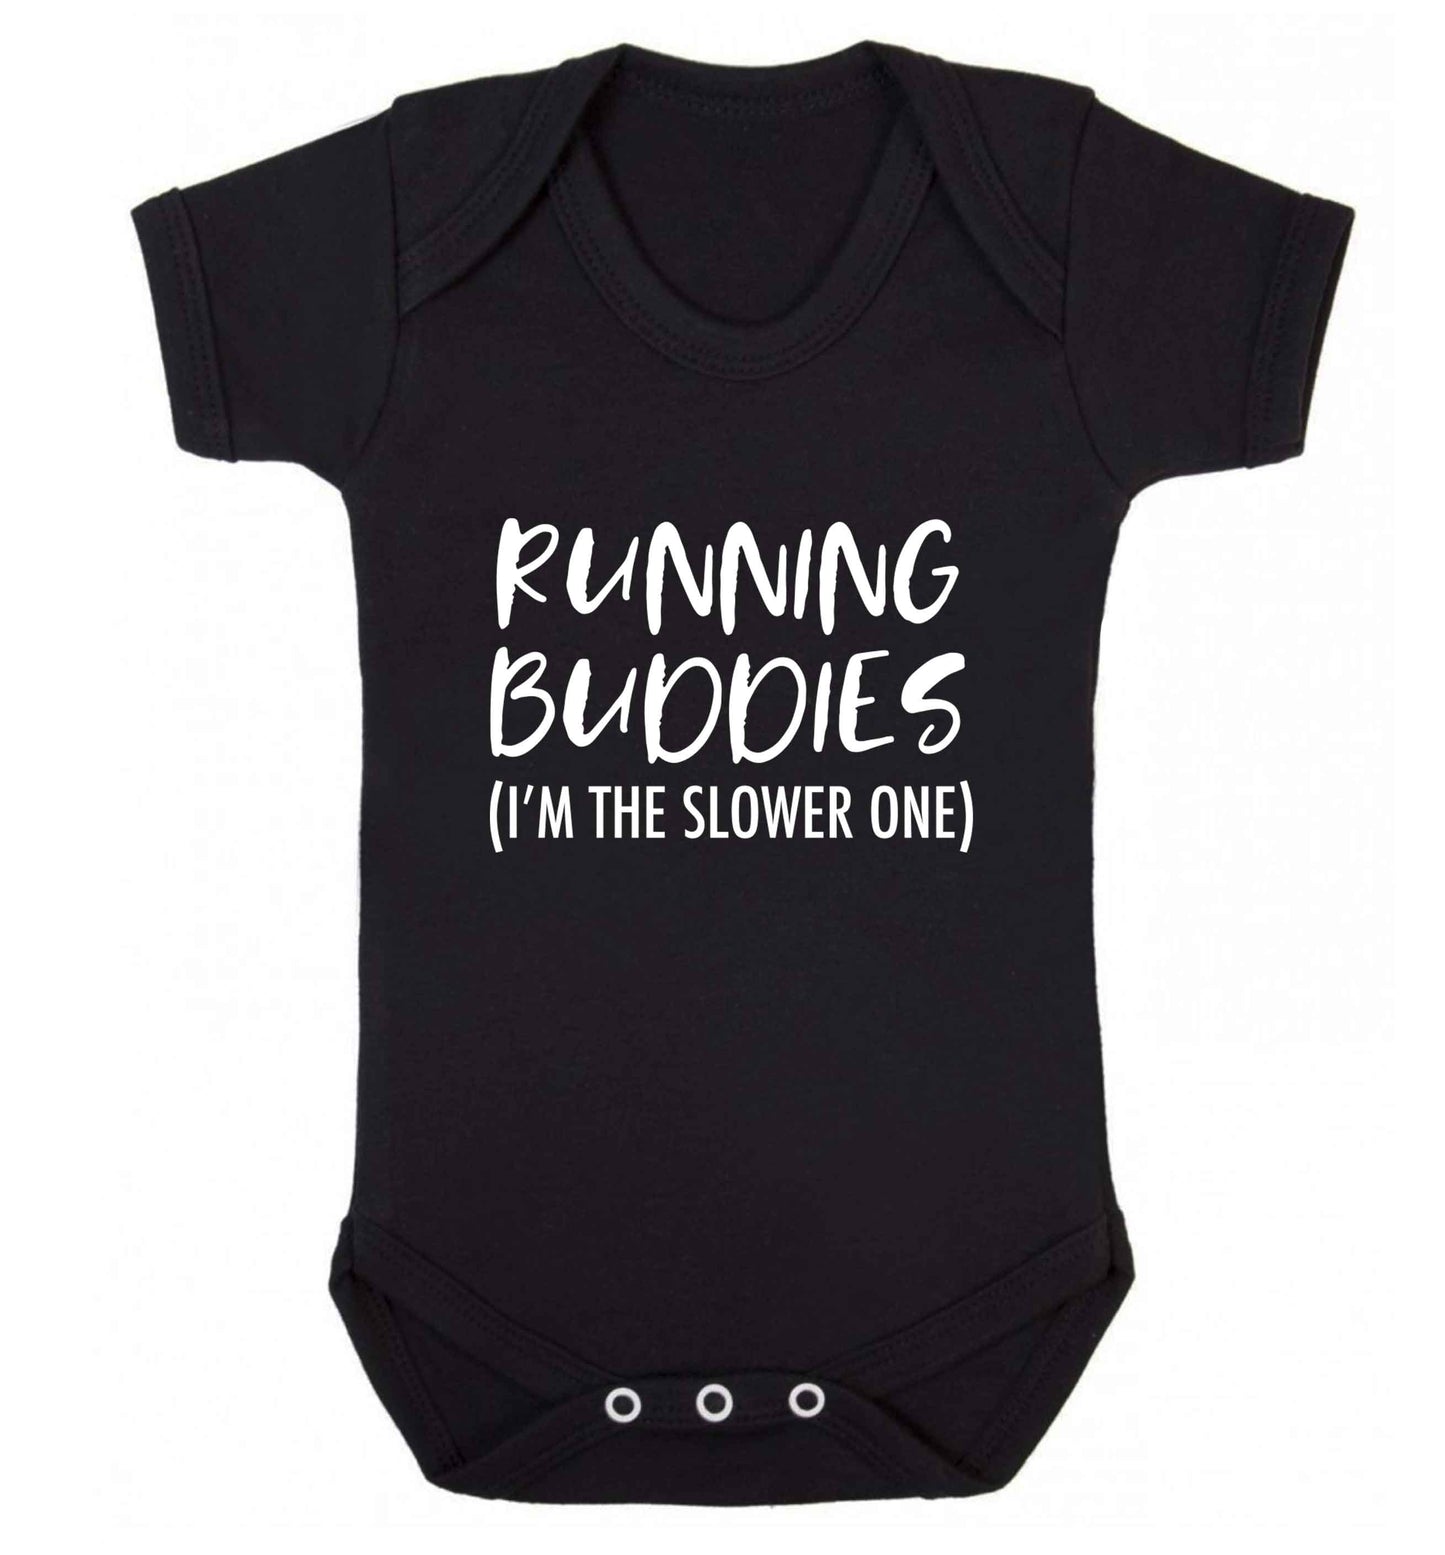 Running buddies (I'm the slower one) baby vest black 18-24 months